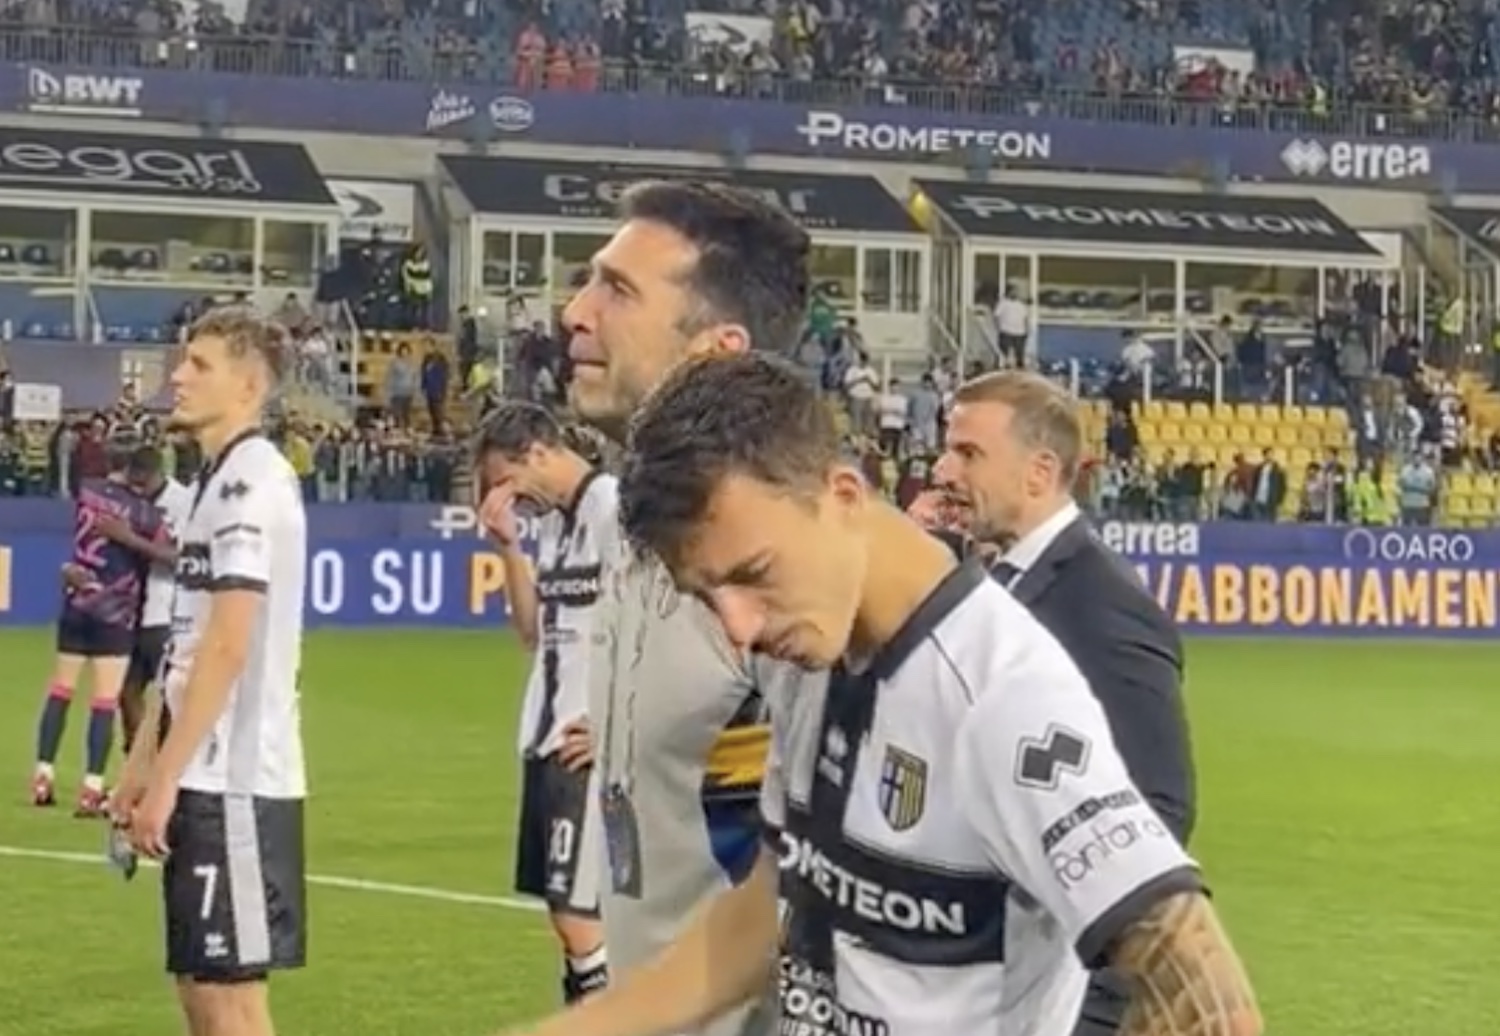 Le lacrime amare di Buffon dopo Parma Cagliari, a 45 anni sfuma il ritorno in Serie A – Il video